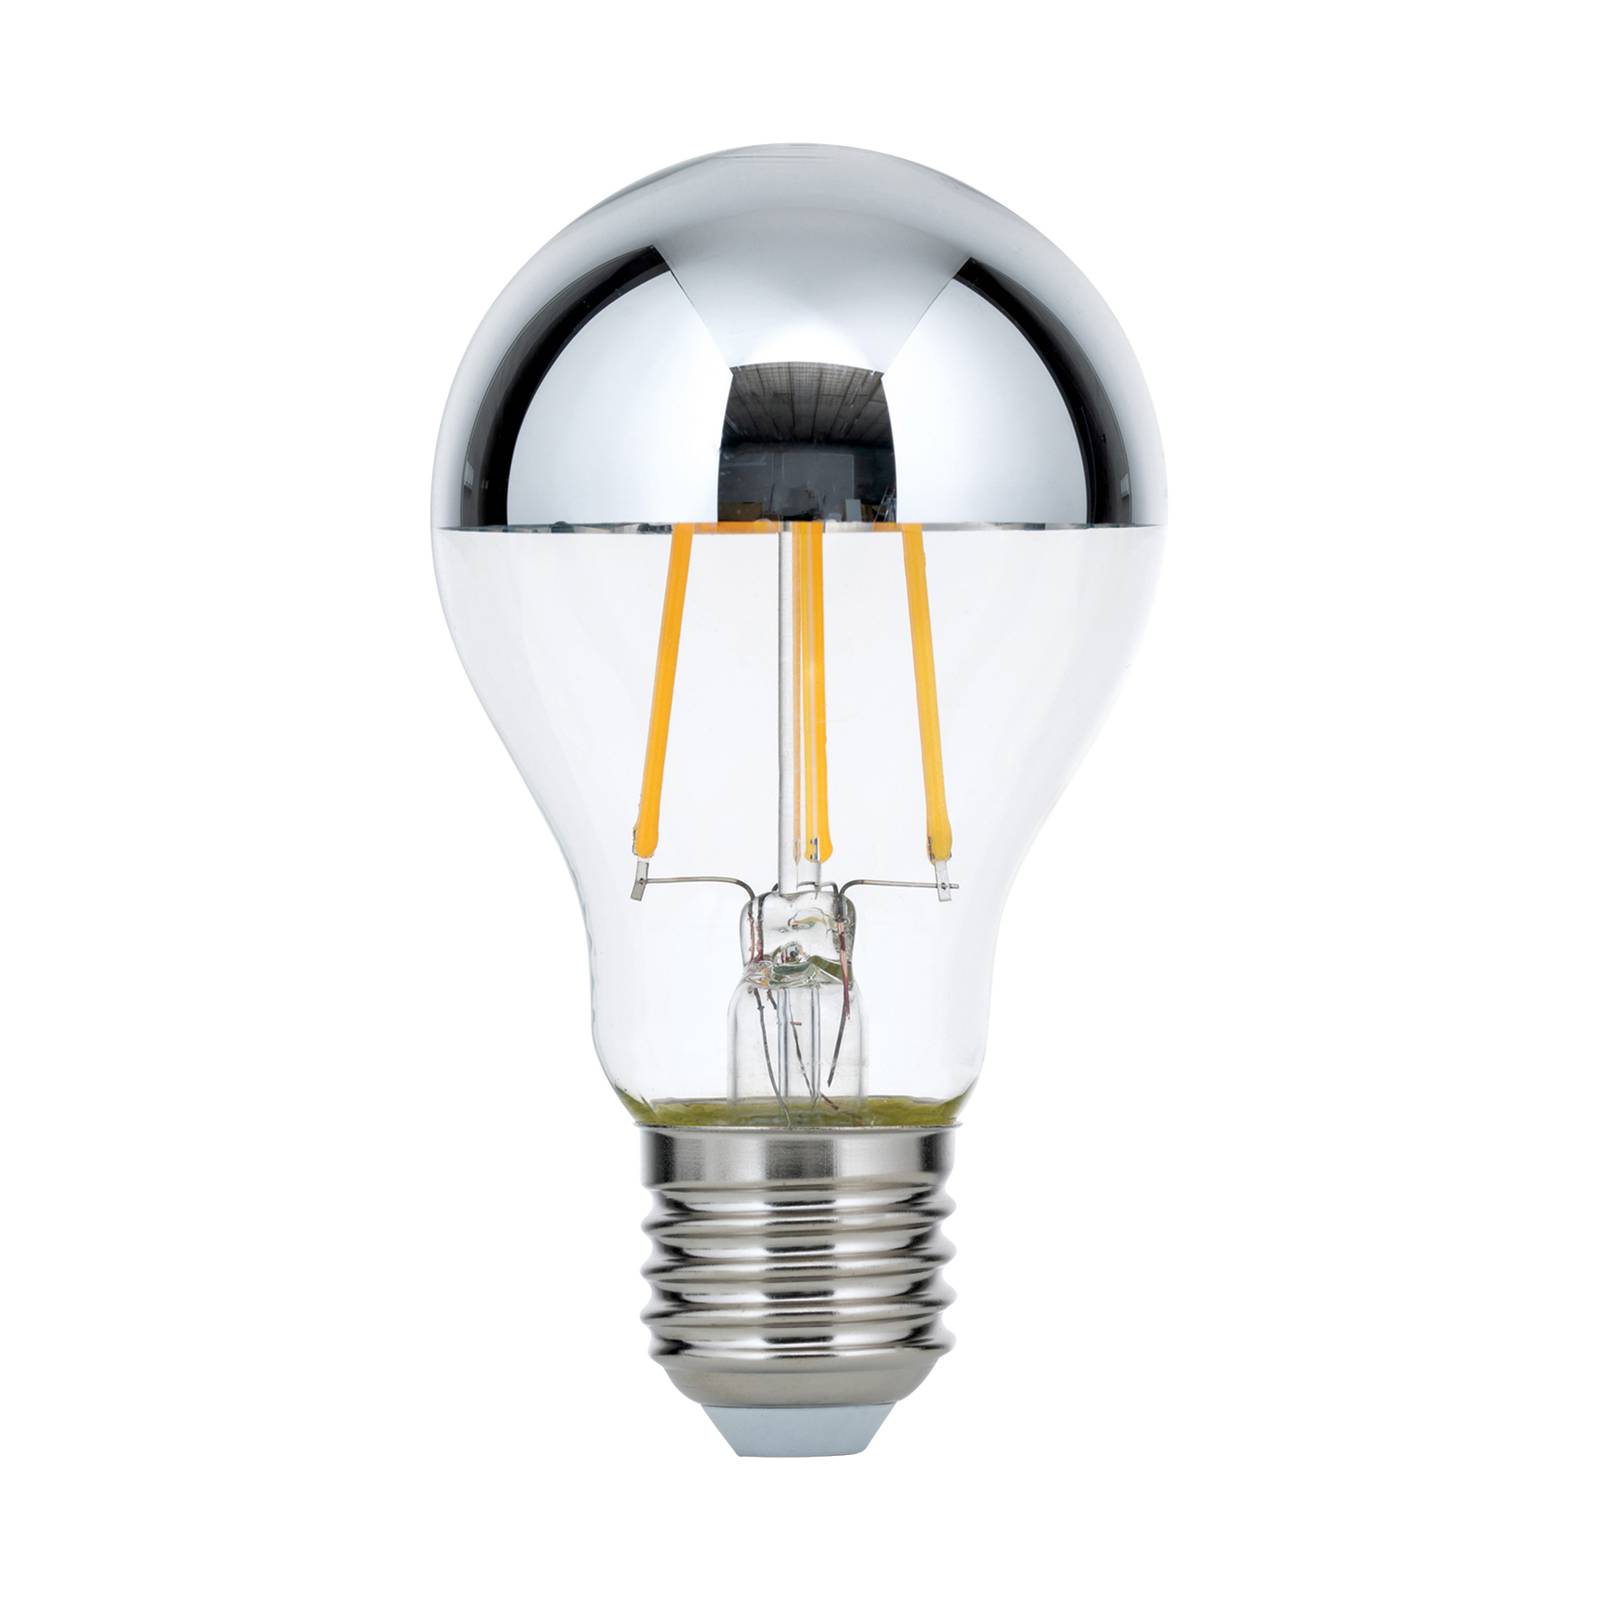 LED tükrös fejű lámpa E27 8W meleg fehér, dimm.